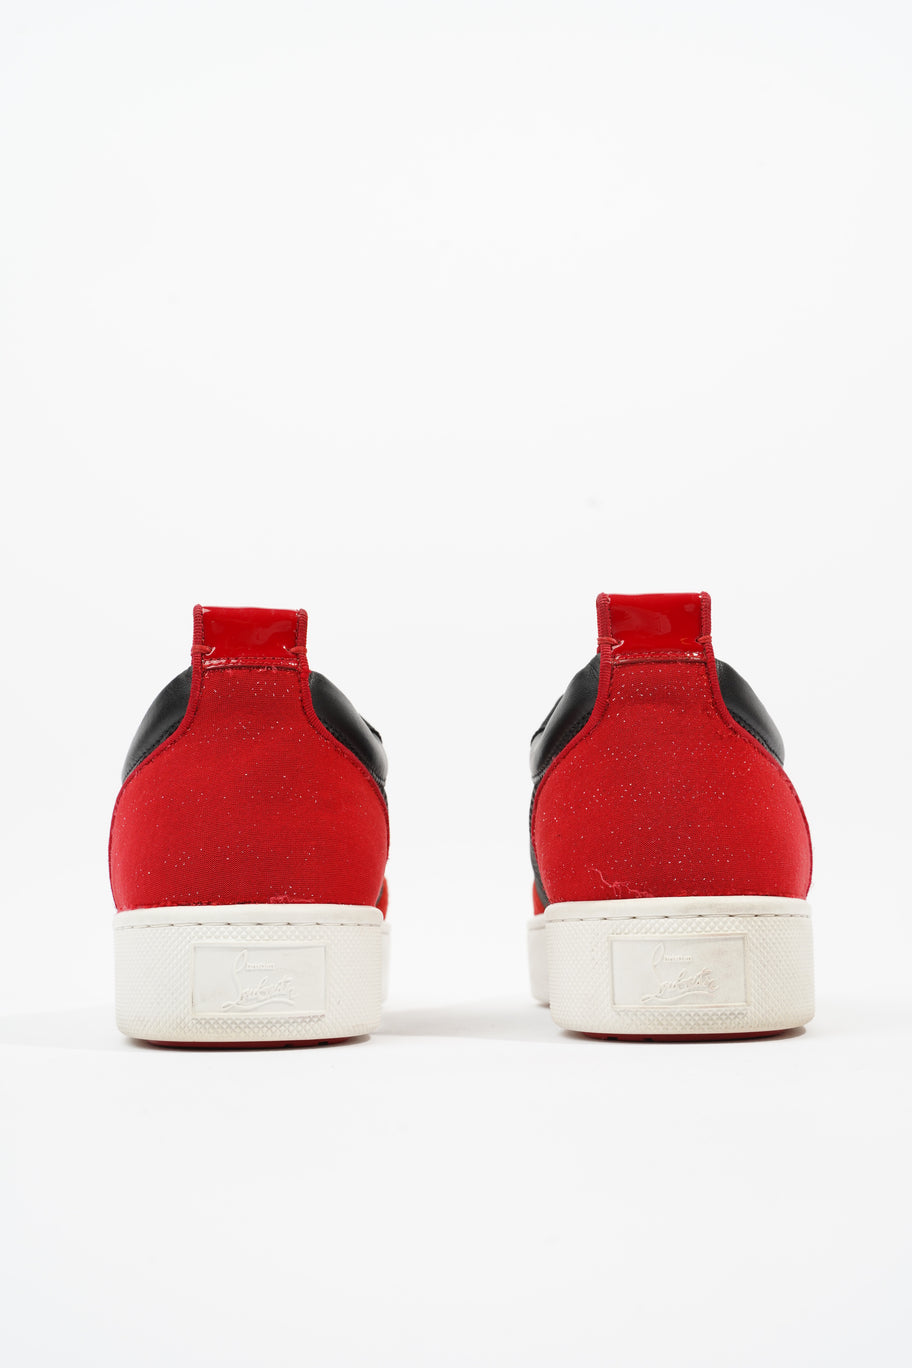 Happyrui Sneakers Black / Red Mesh EU 42.5 UK 8.5 Image 6